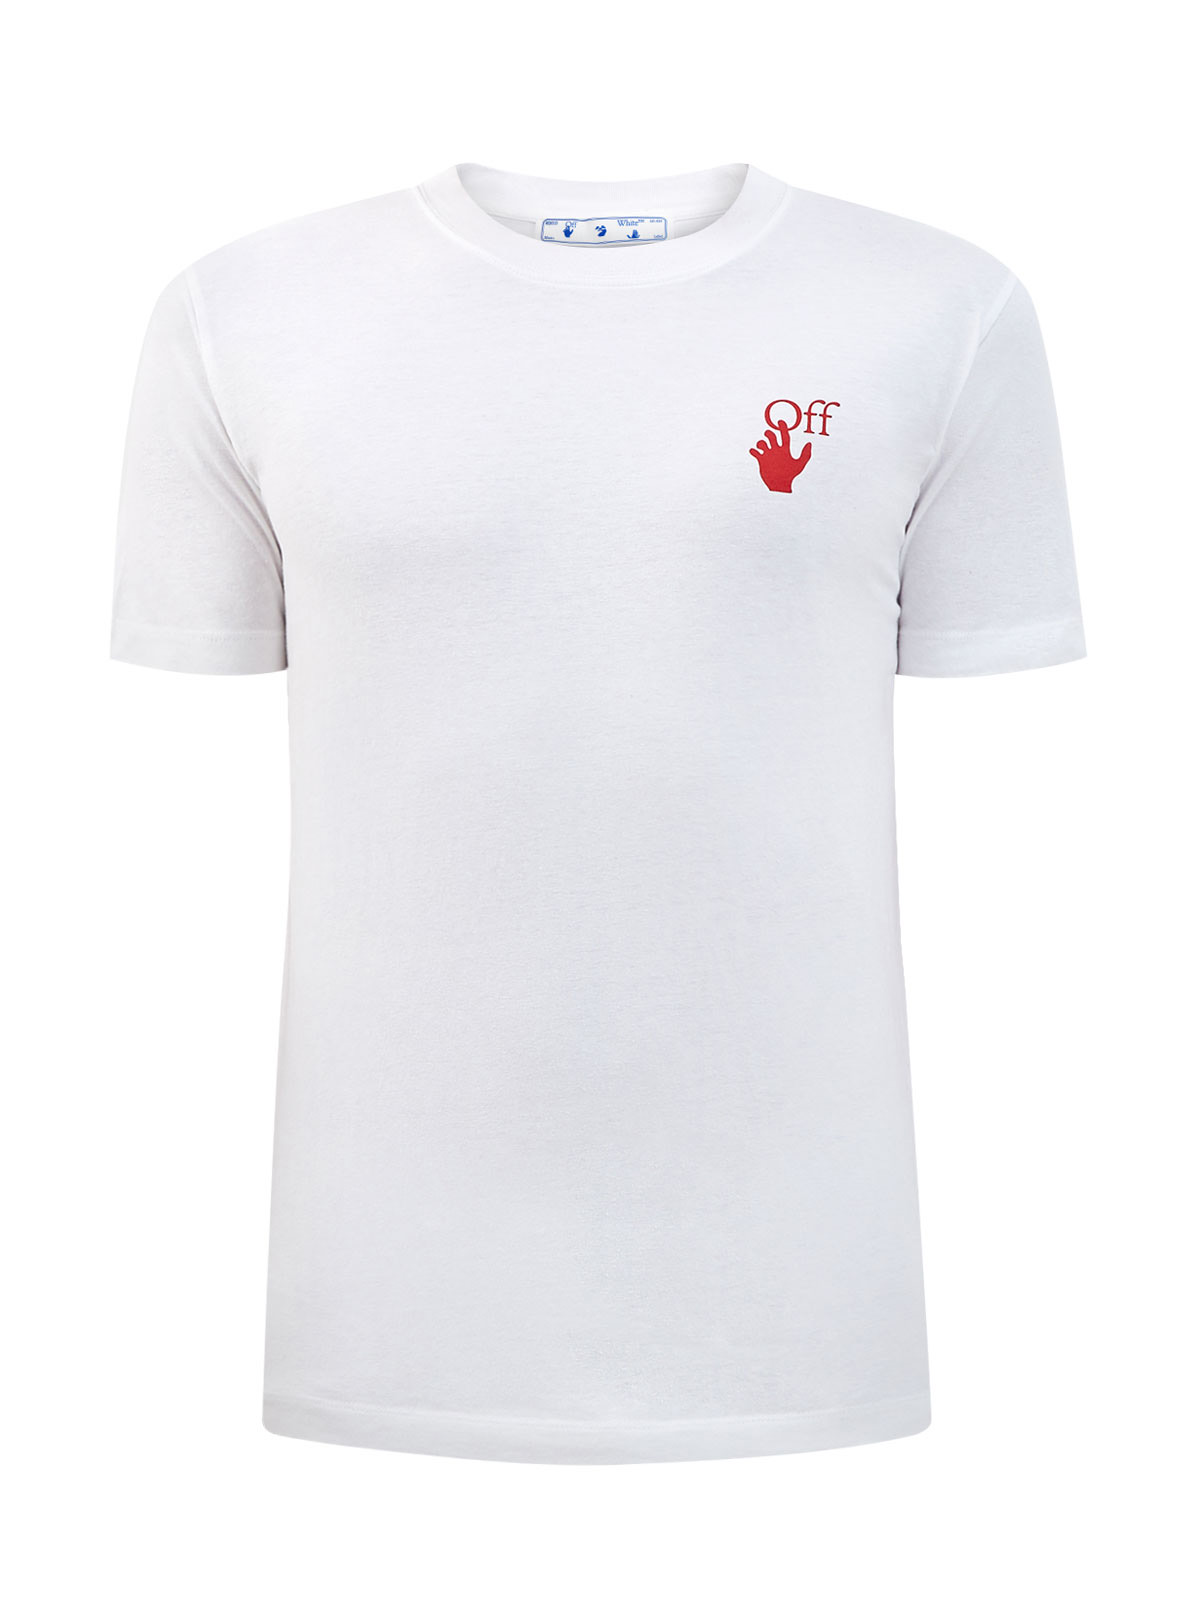 Белая футболка из джерси с макро-принтом Arrows OFF-WHITE, цвет белый, размер M;L;2XL - фото 1